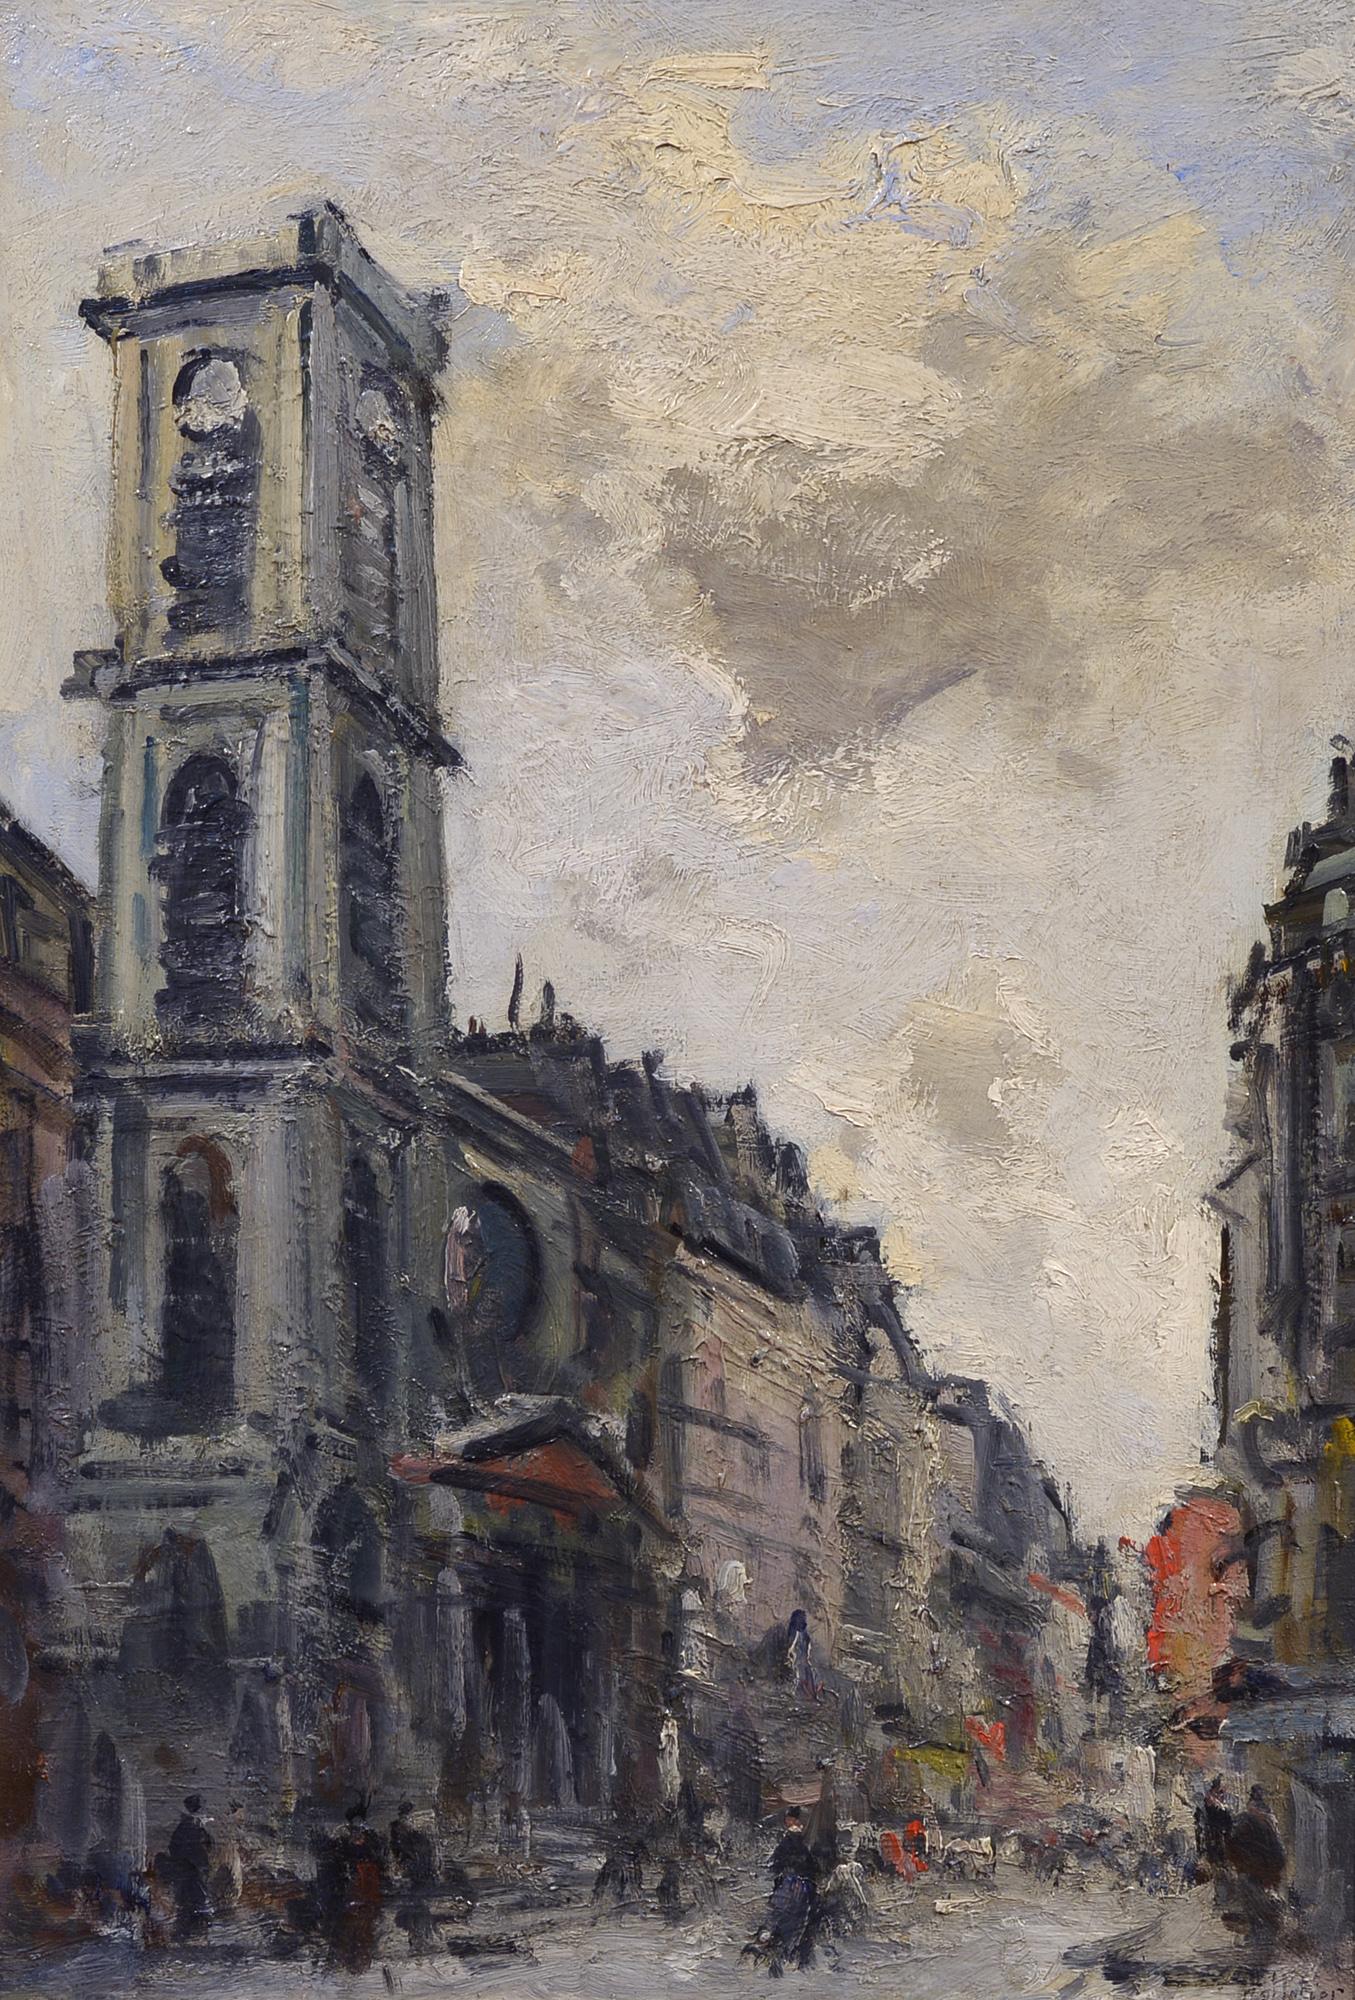 Landscape Painting Pierre Pelletier - Paris, paysage urbain, début du 20e siècle, huile impressionniste